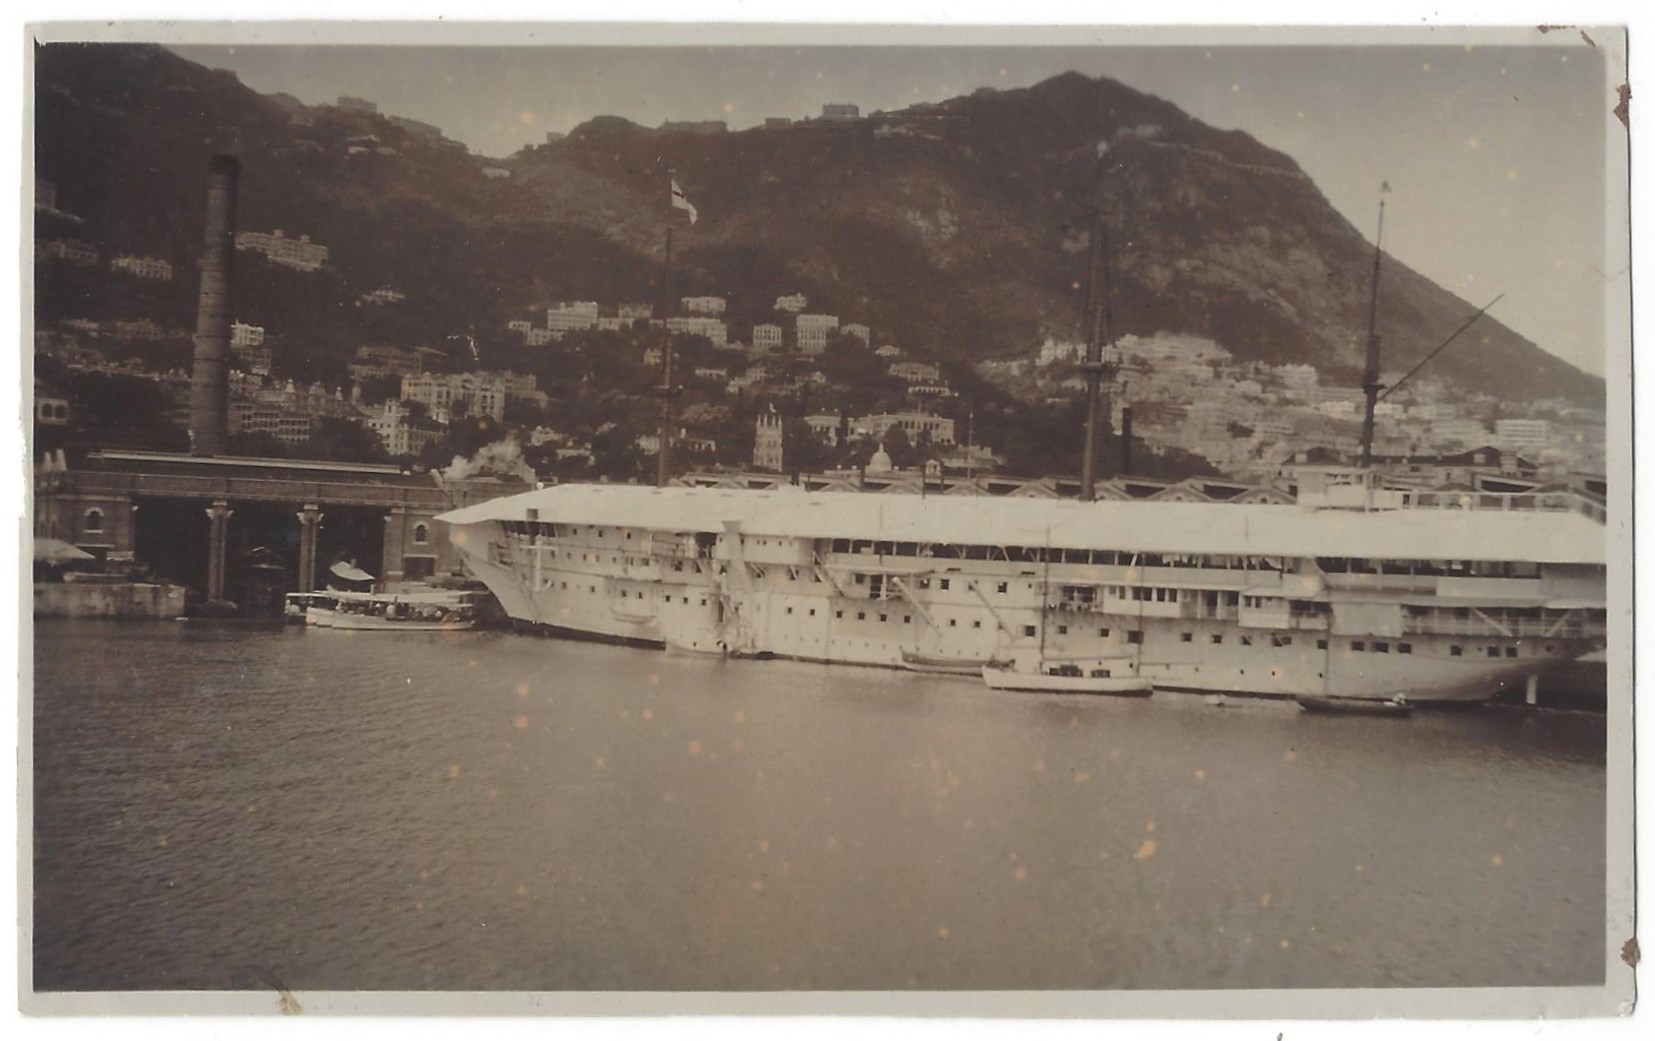 HMS Tamar in Hong Kong's Victoria Harbor. (Hong Kong Maritime Museum)